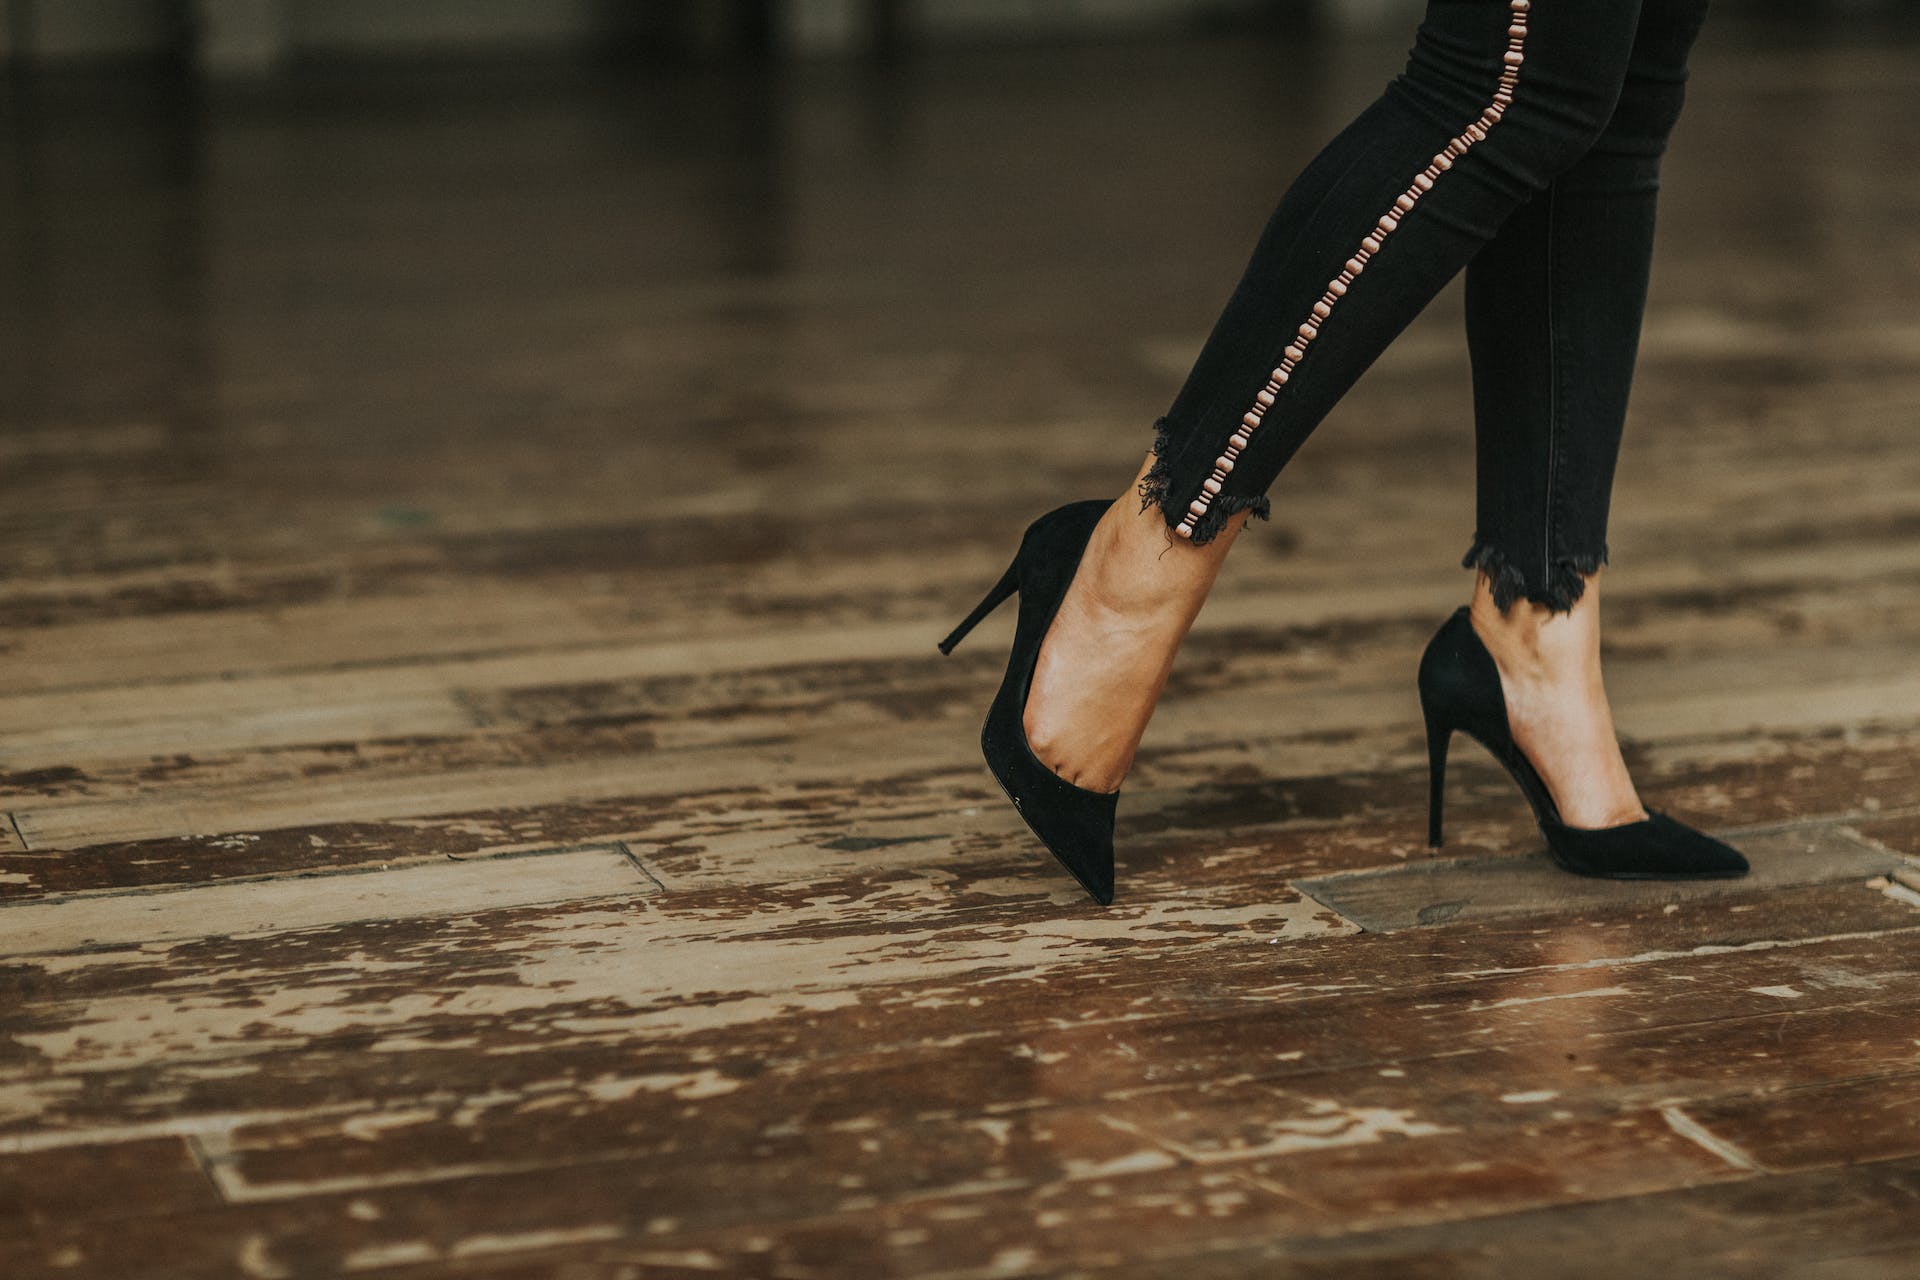 A woman in black heels | Source: Pexels